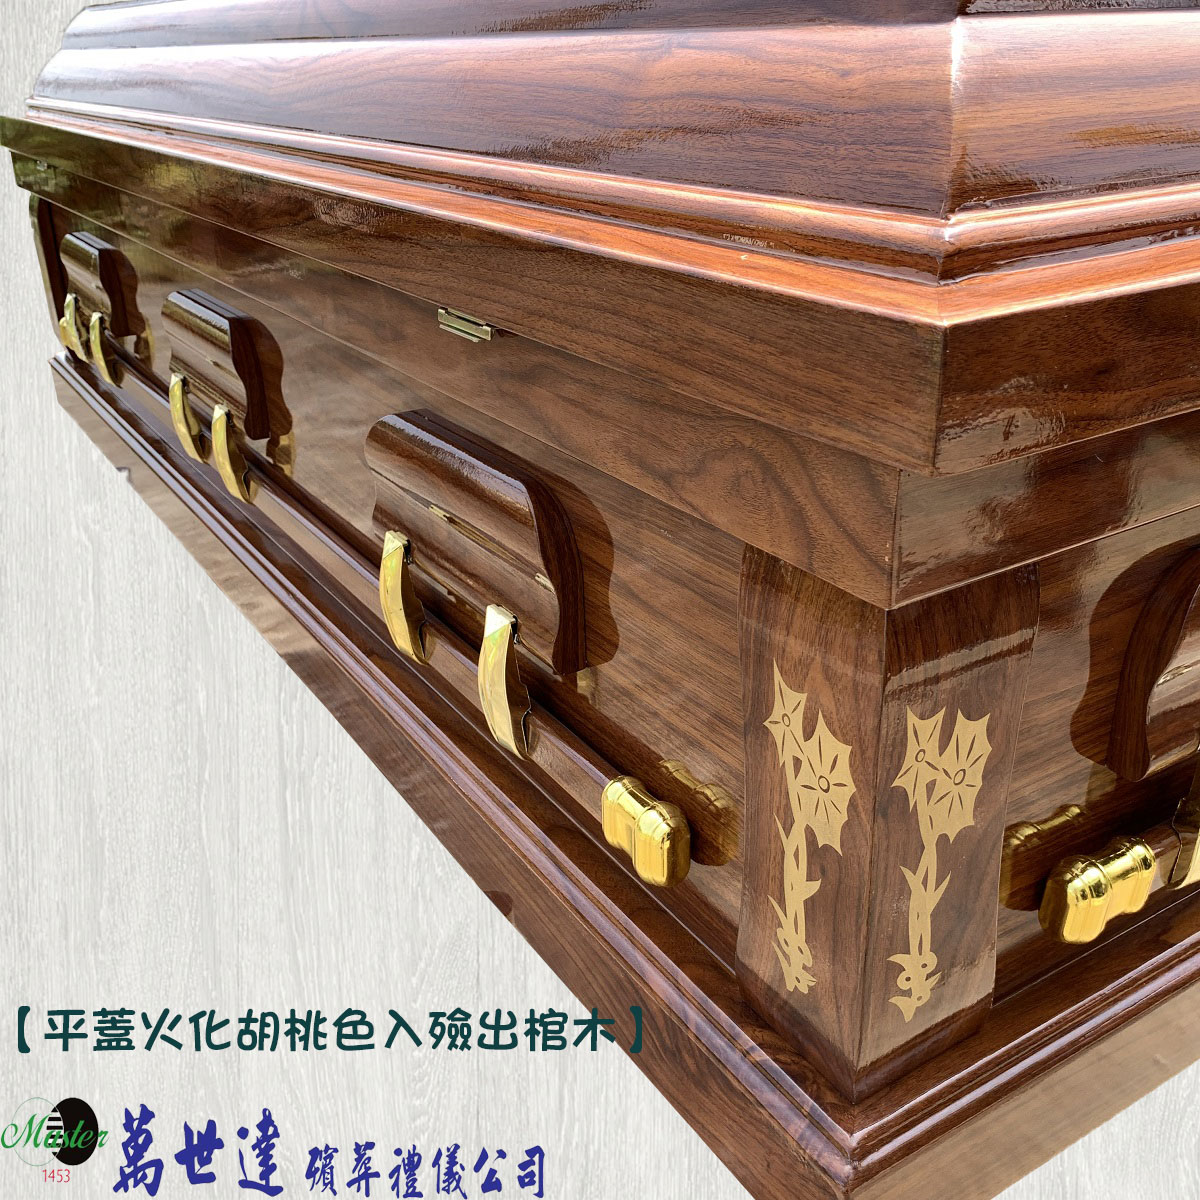 【入殮出】十字架基督天主火化平蓋胡桃木扶手棺2.1尺